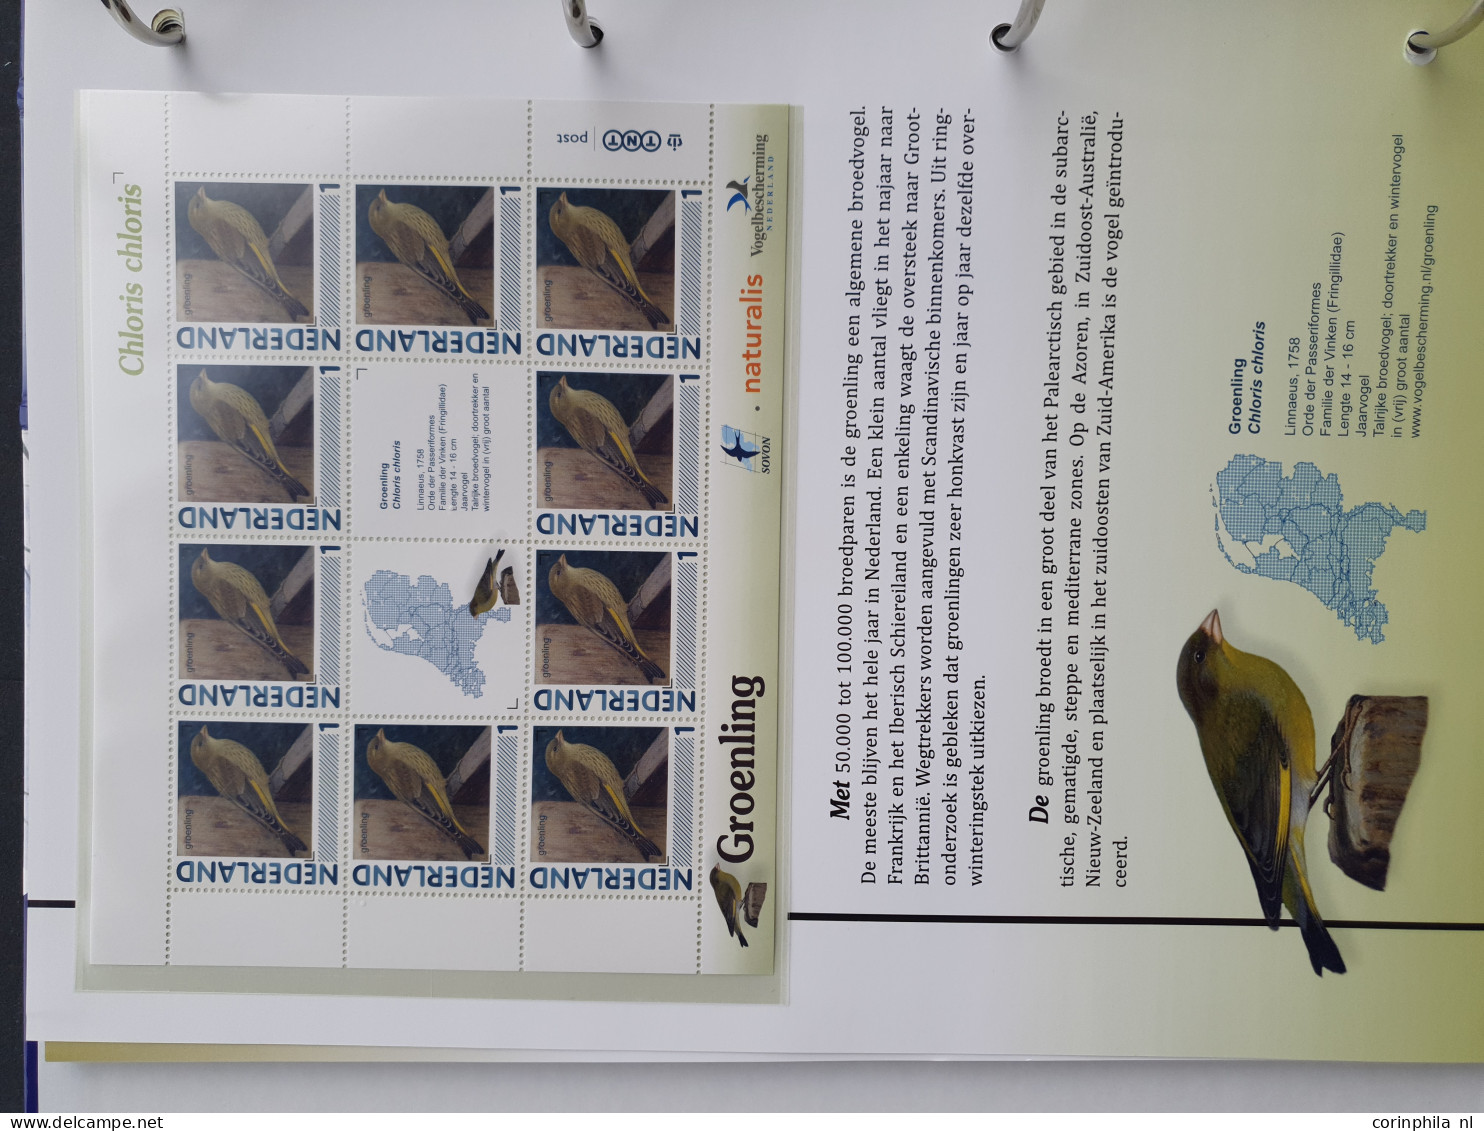 2007-2020 collecties nominaal (Canon van Nederland, Nostalgie in Postzegels, Vlinders, Vogels (inclusief Aigo Pen)) w.b.